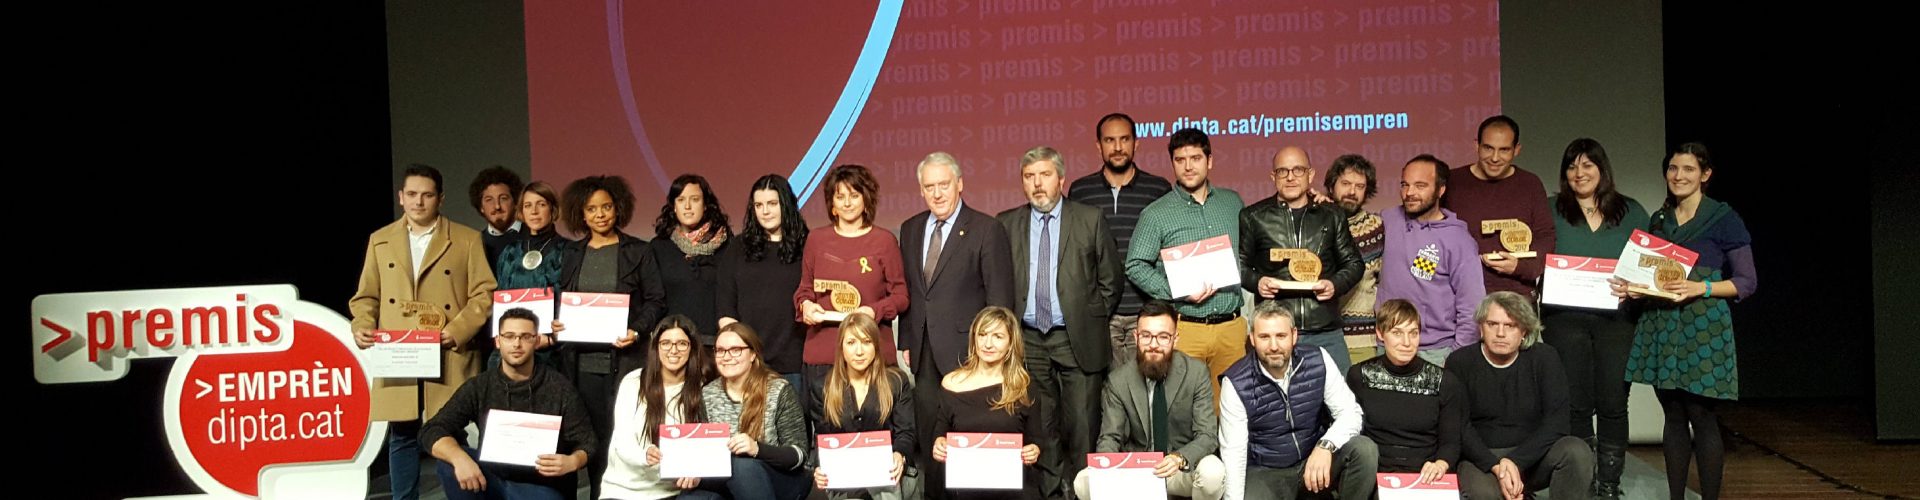 Els Premis Emprèn de la Diputació de Tarragona impulsen 14 nous projectes empresarials